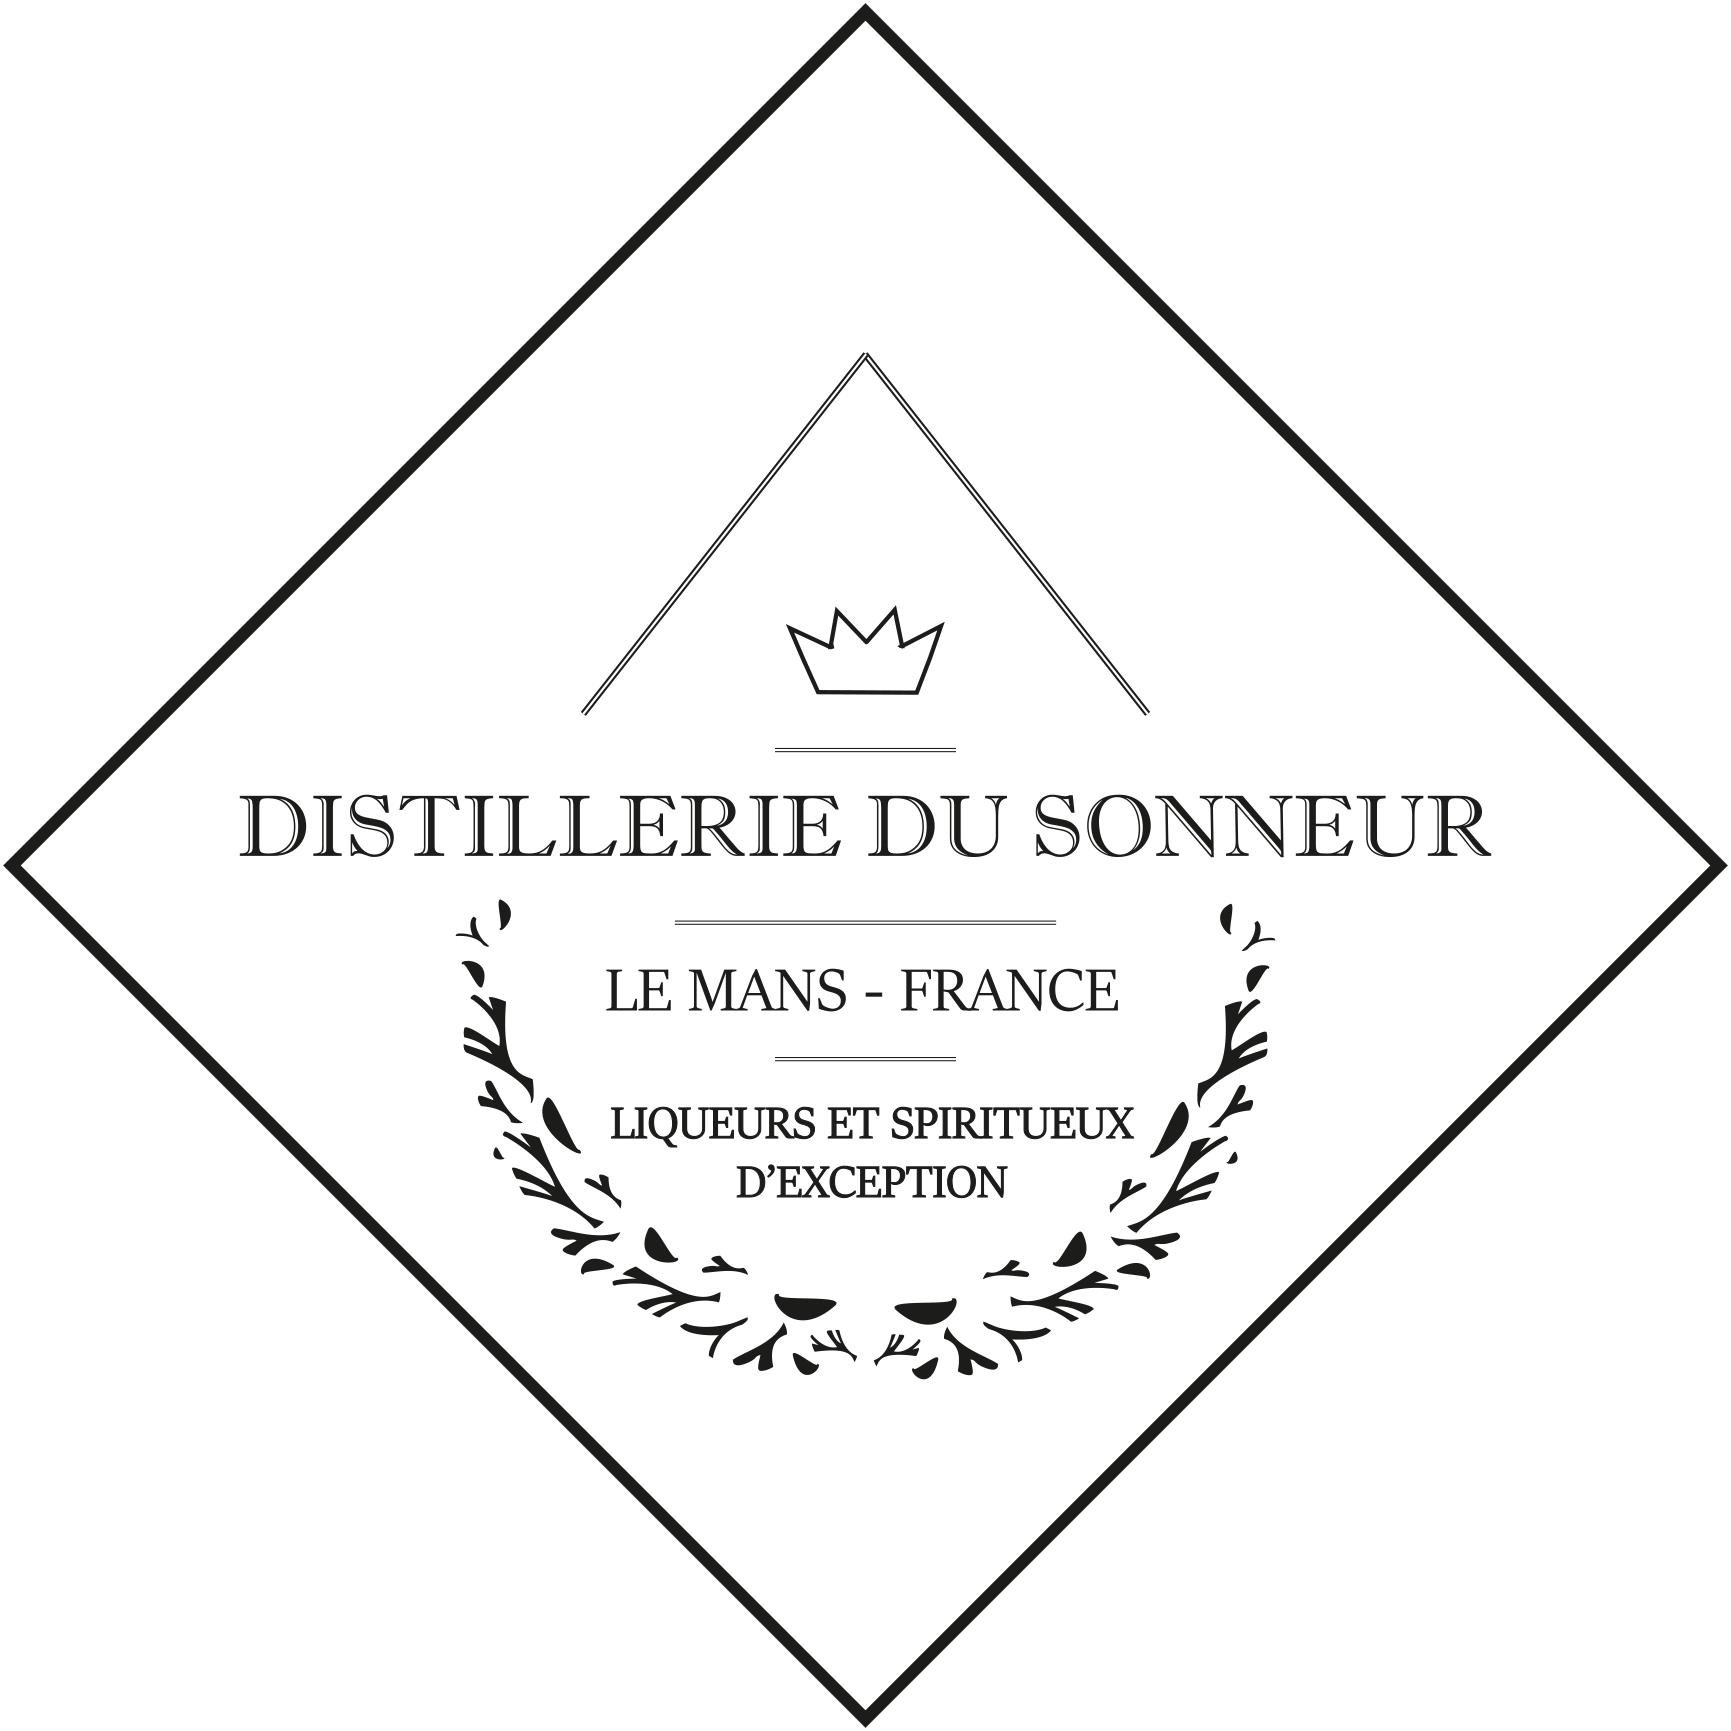 La Distillerie du Sonneur vous propose ses créations d’exception : Eaux-de-vie, Liqueurs, Dérangés, Vodkas, issues d’une agriculture biologique située à Ségrie.